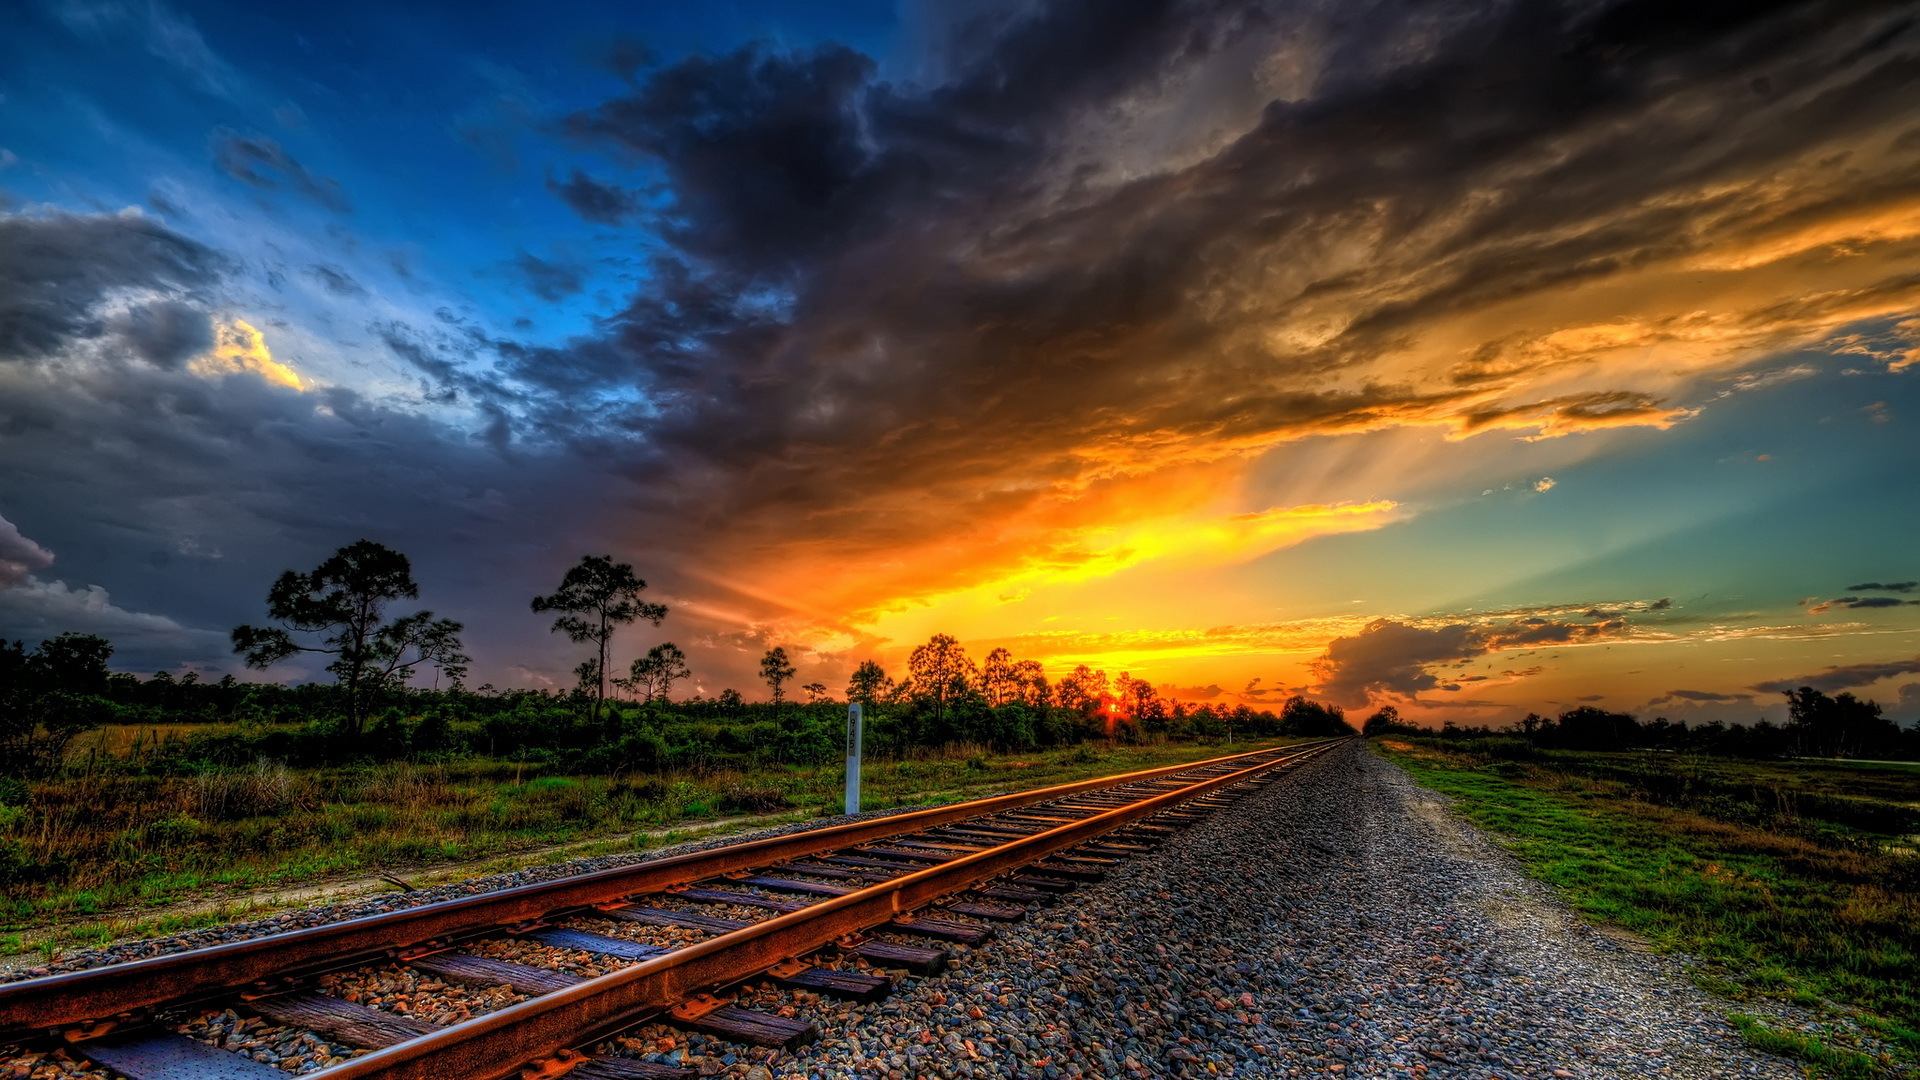 Cloud Hdr Landscape Railroad Sunset 1920x1080